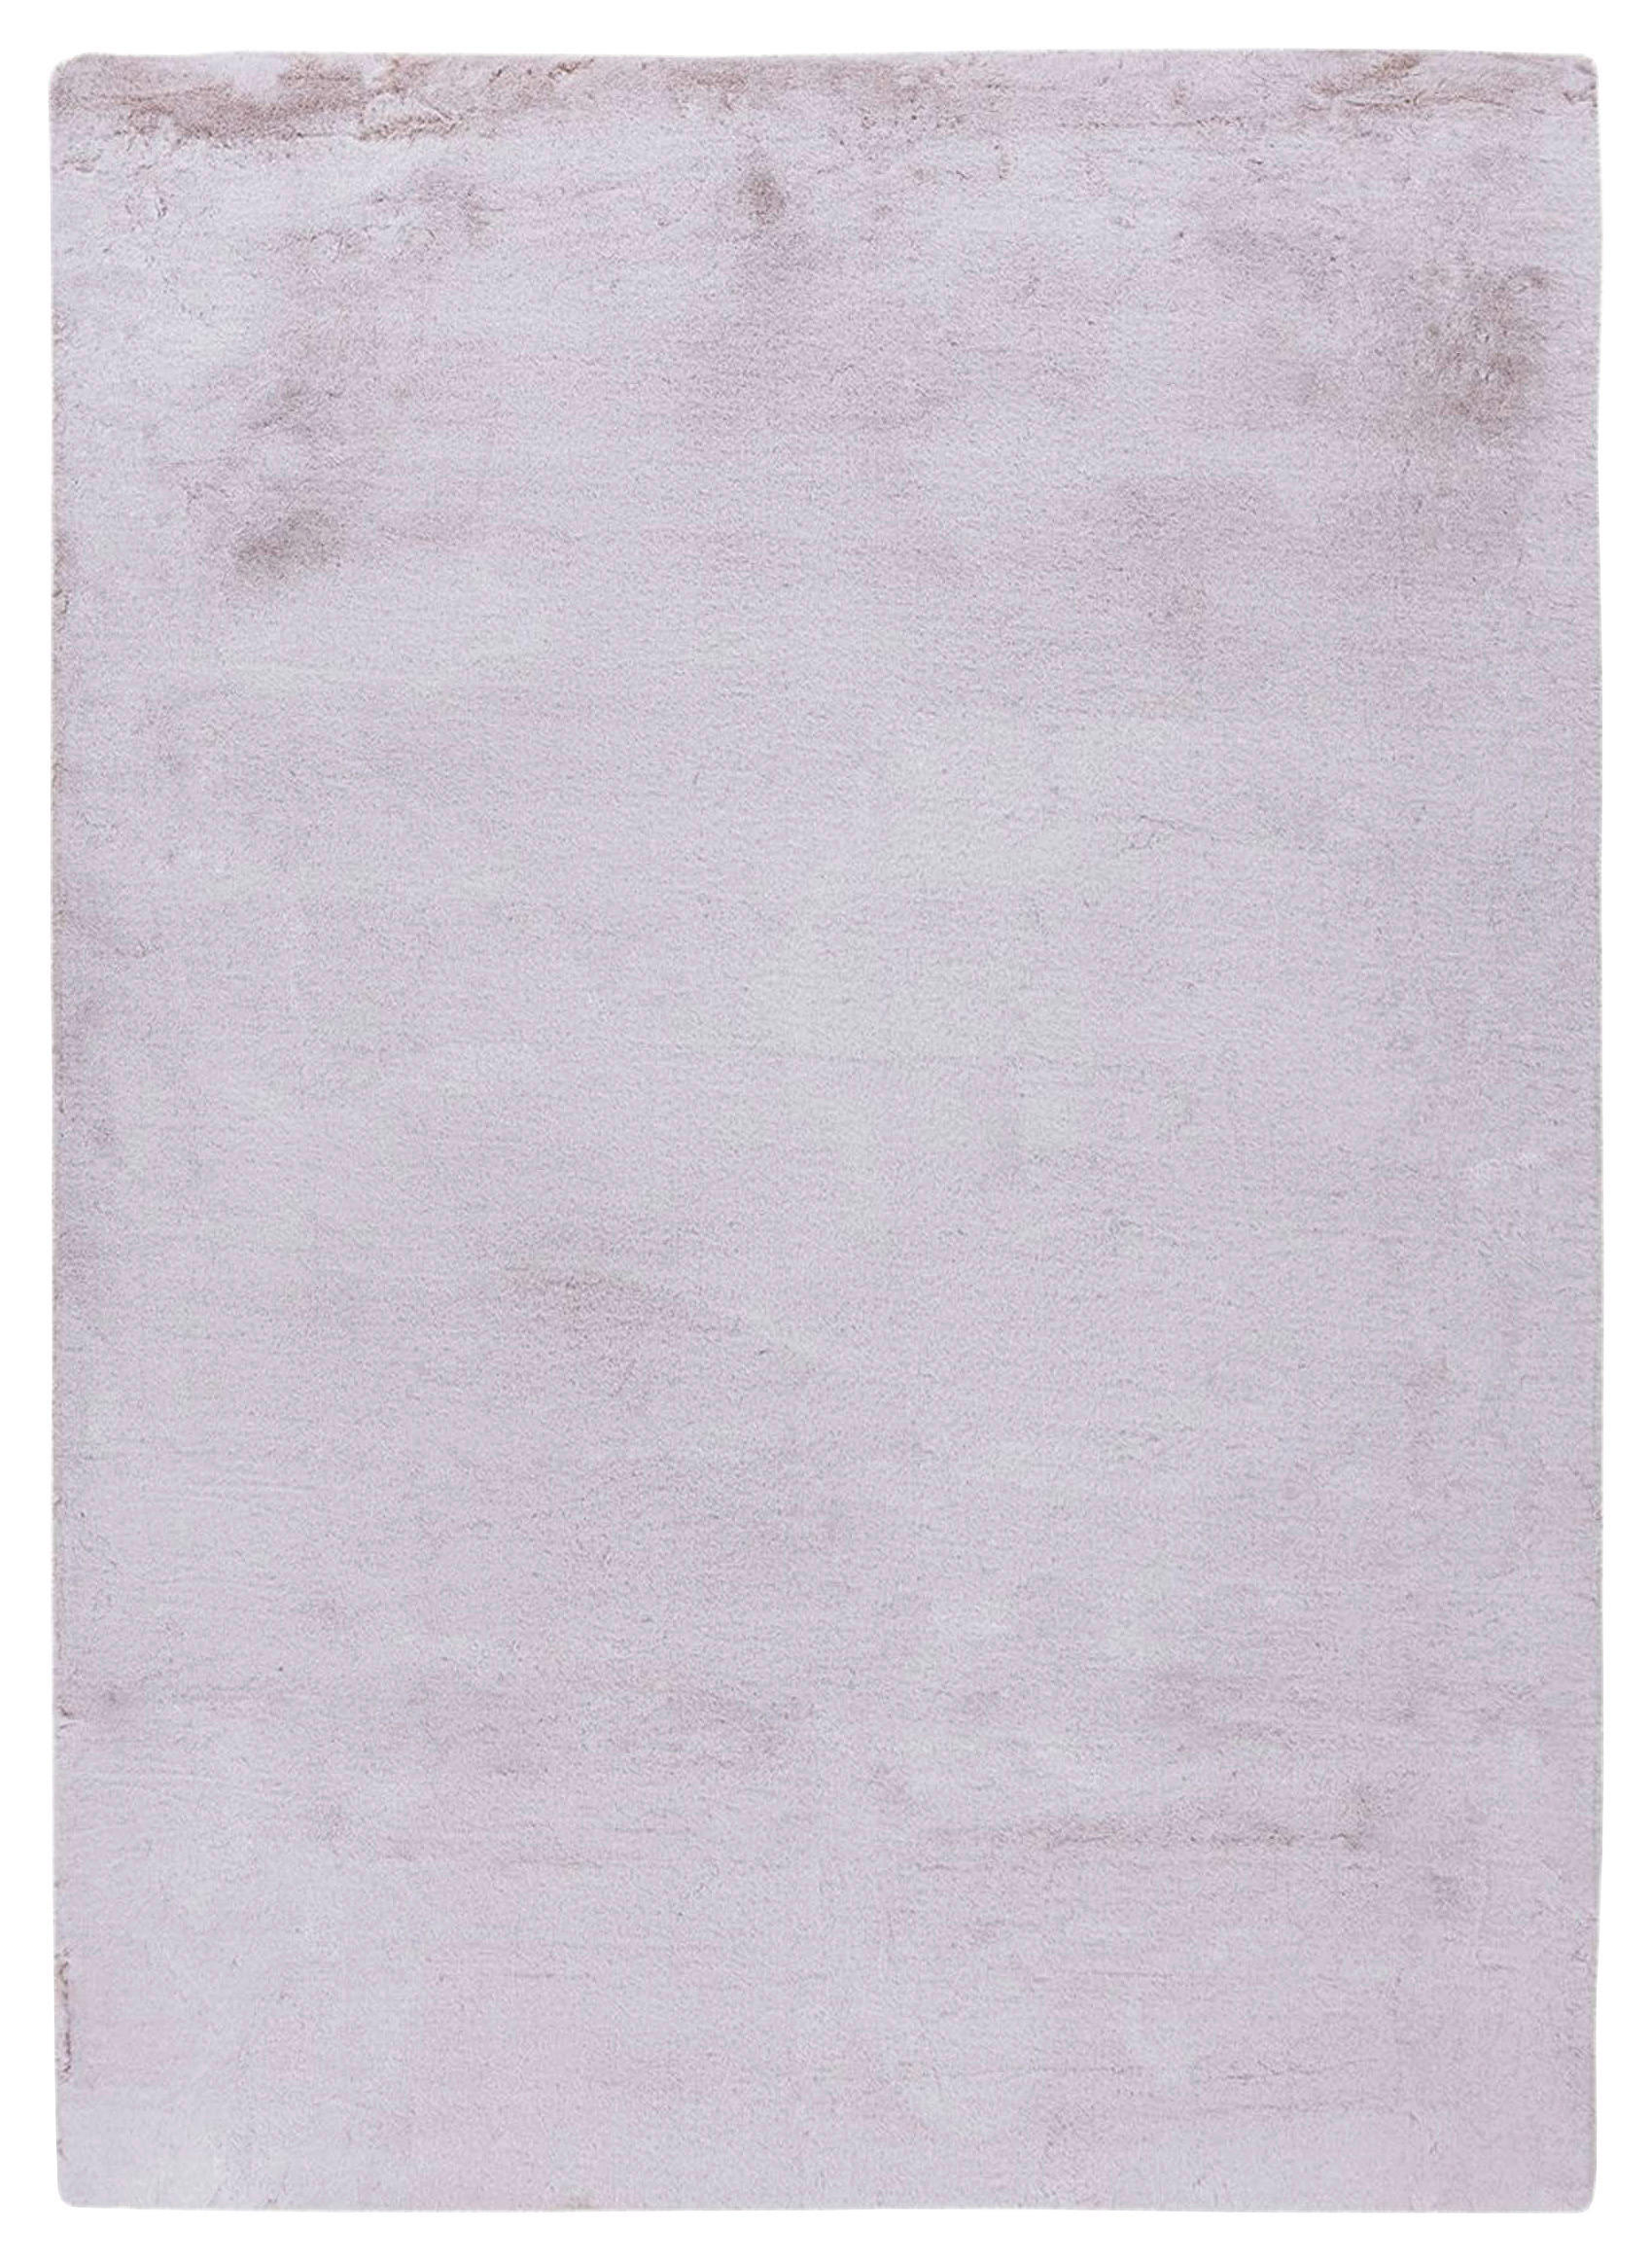 TEPPICH 80/150 cm  - Rosa/Weiß, KONVENTIONELL, Textil (80/150cm)